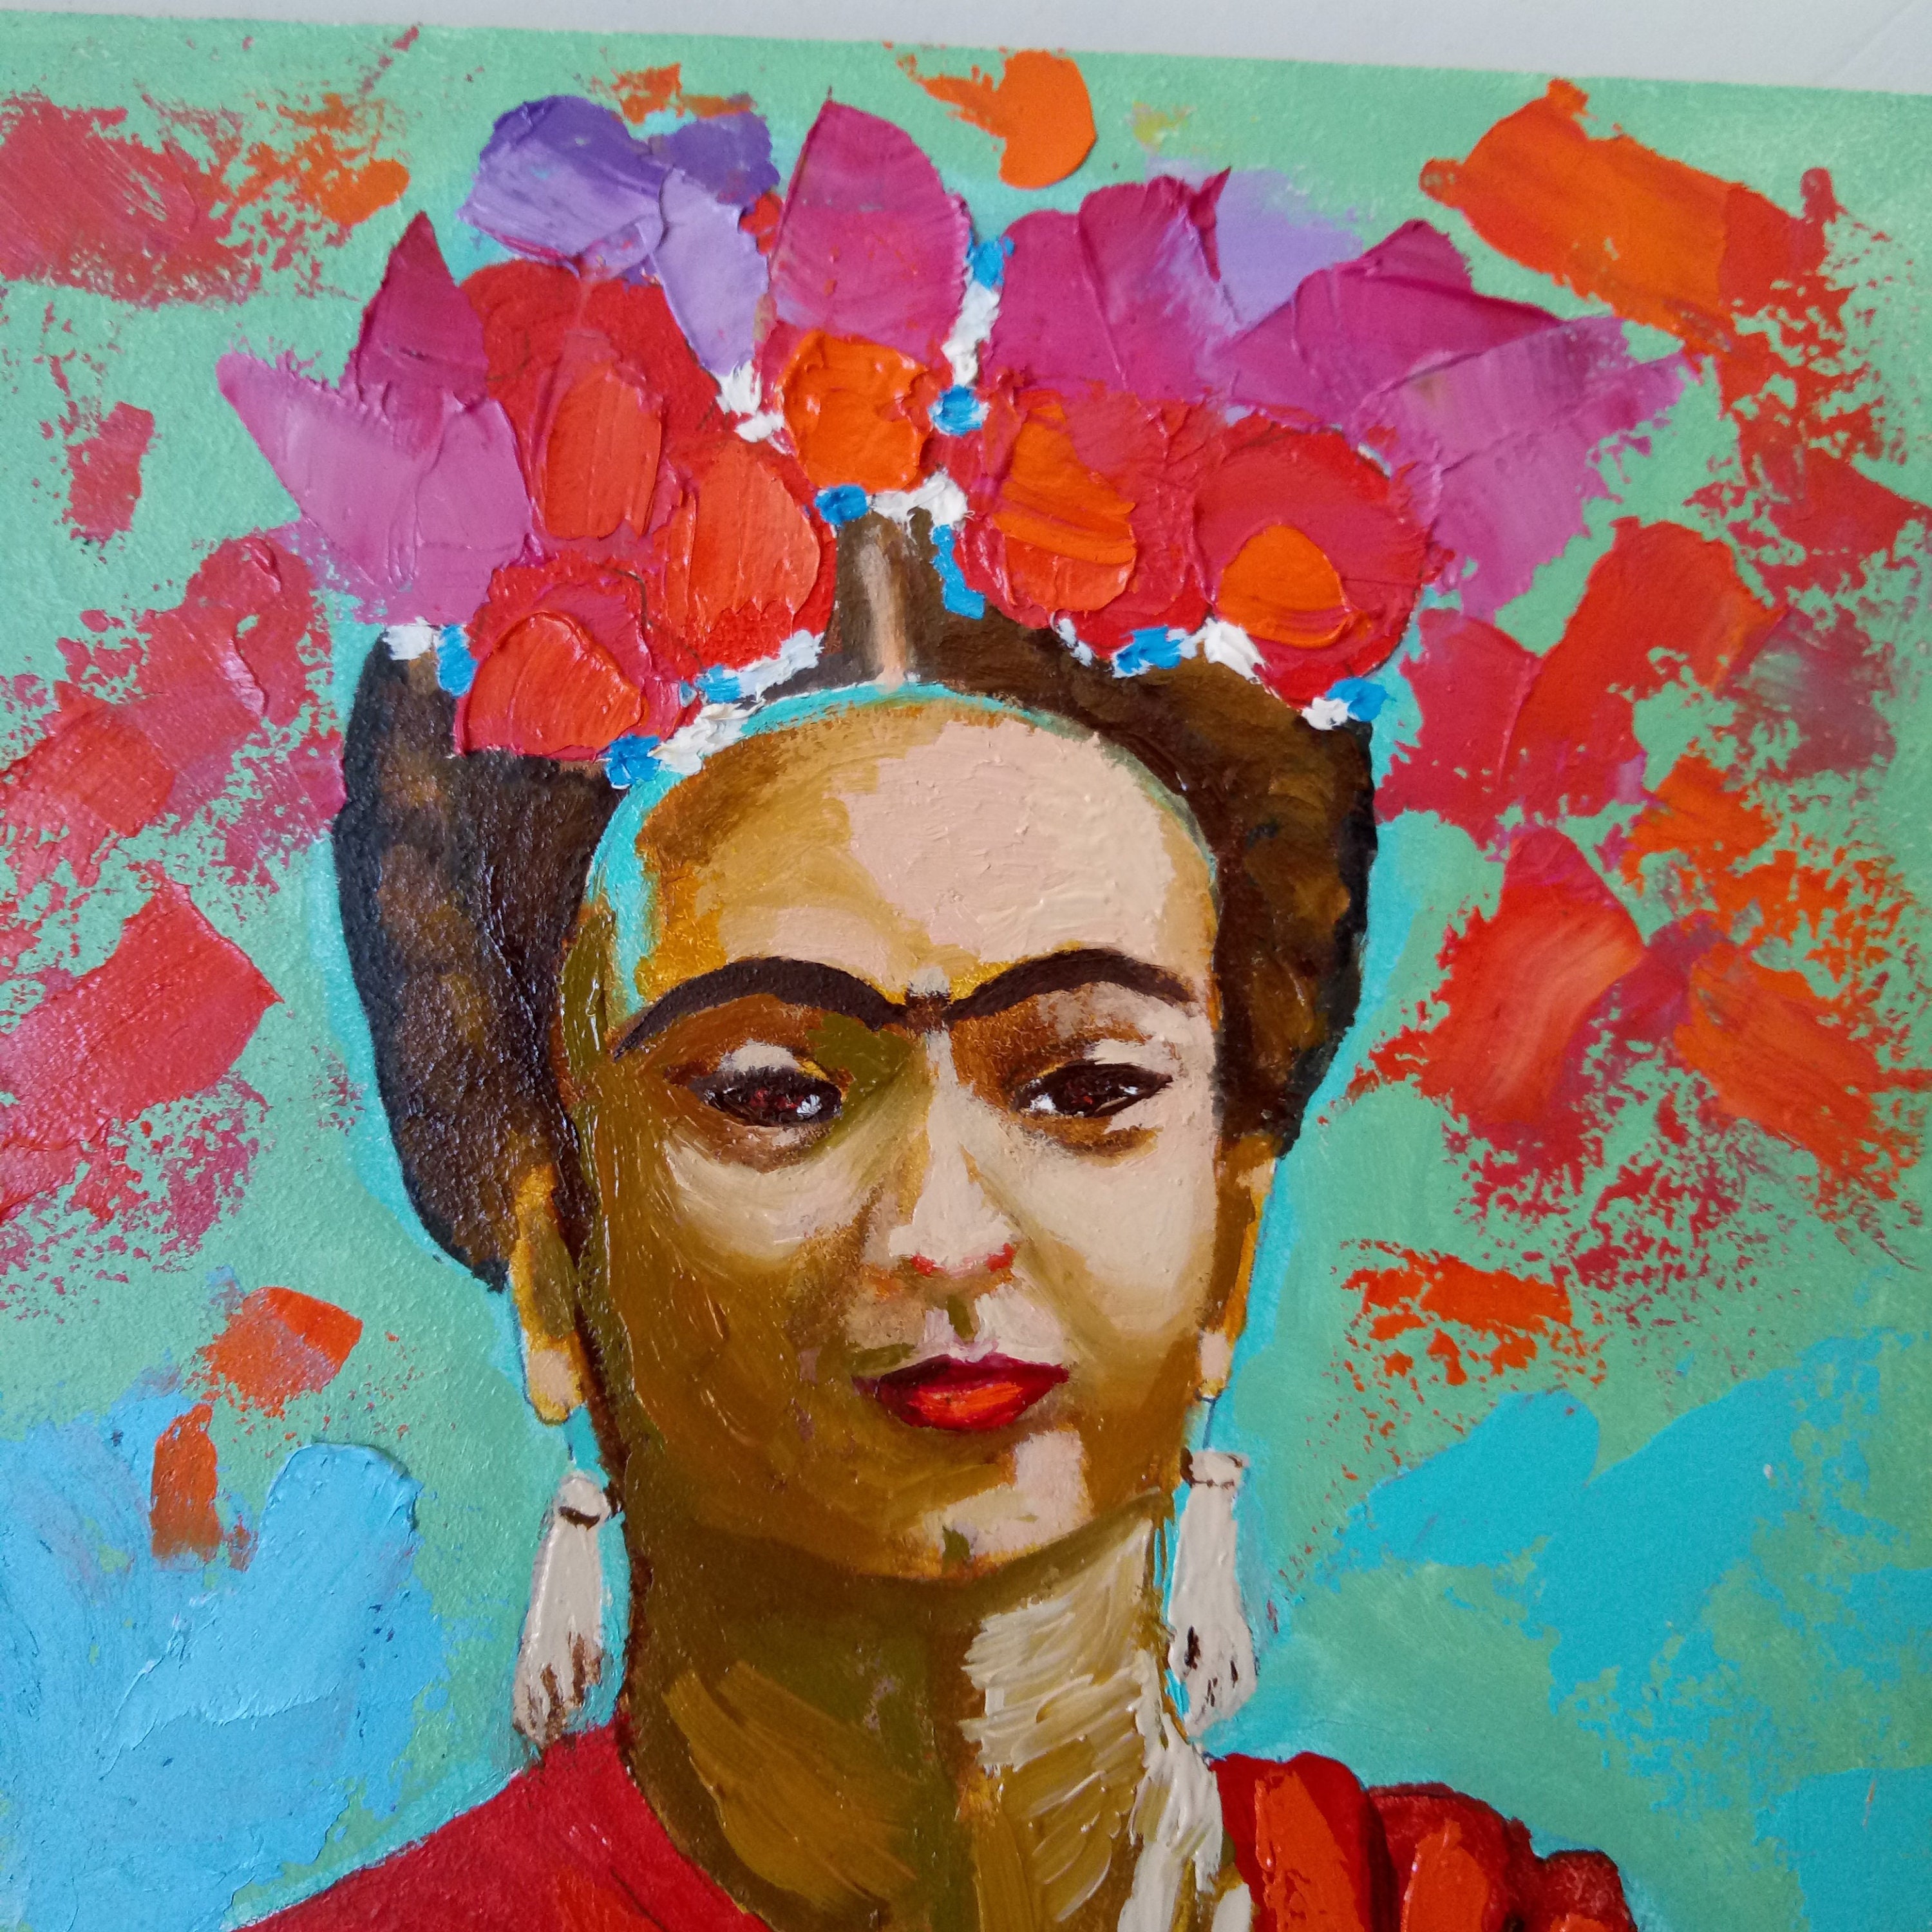 Memory of Frida Frida Kahlo painting Original art portrait | Etsy